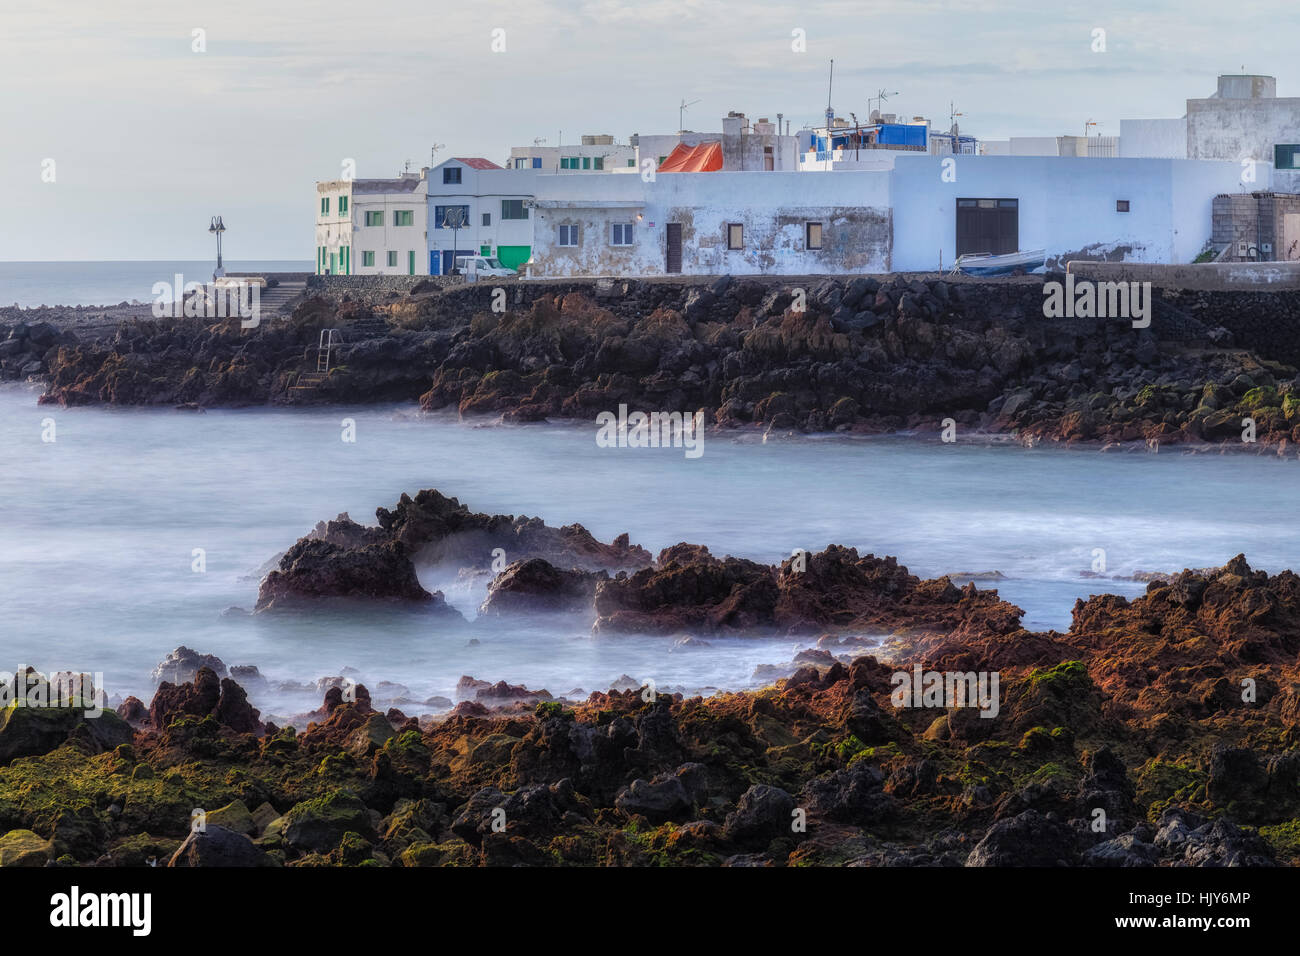 Piscine con acqua di mare, Punta Mujeres, Haria, Lanzarote, Isole Canarie, Spagna Foto Stock